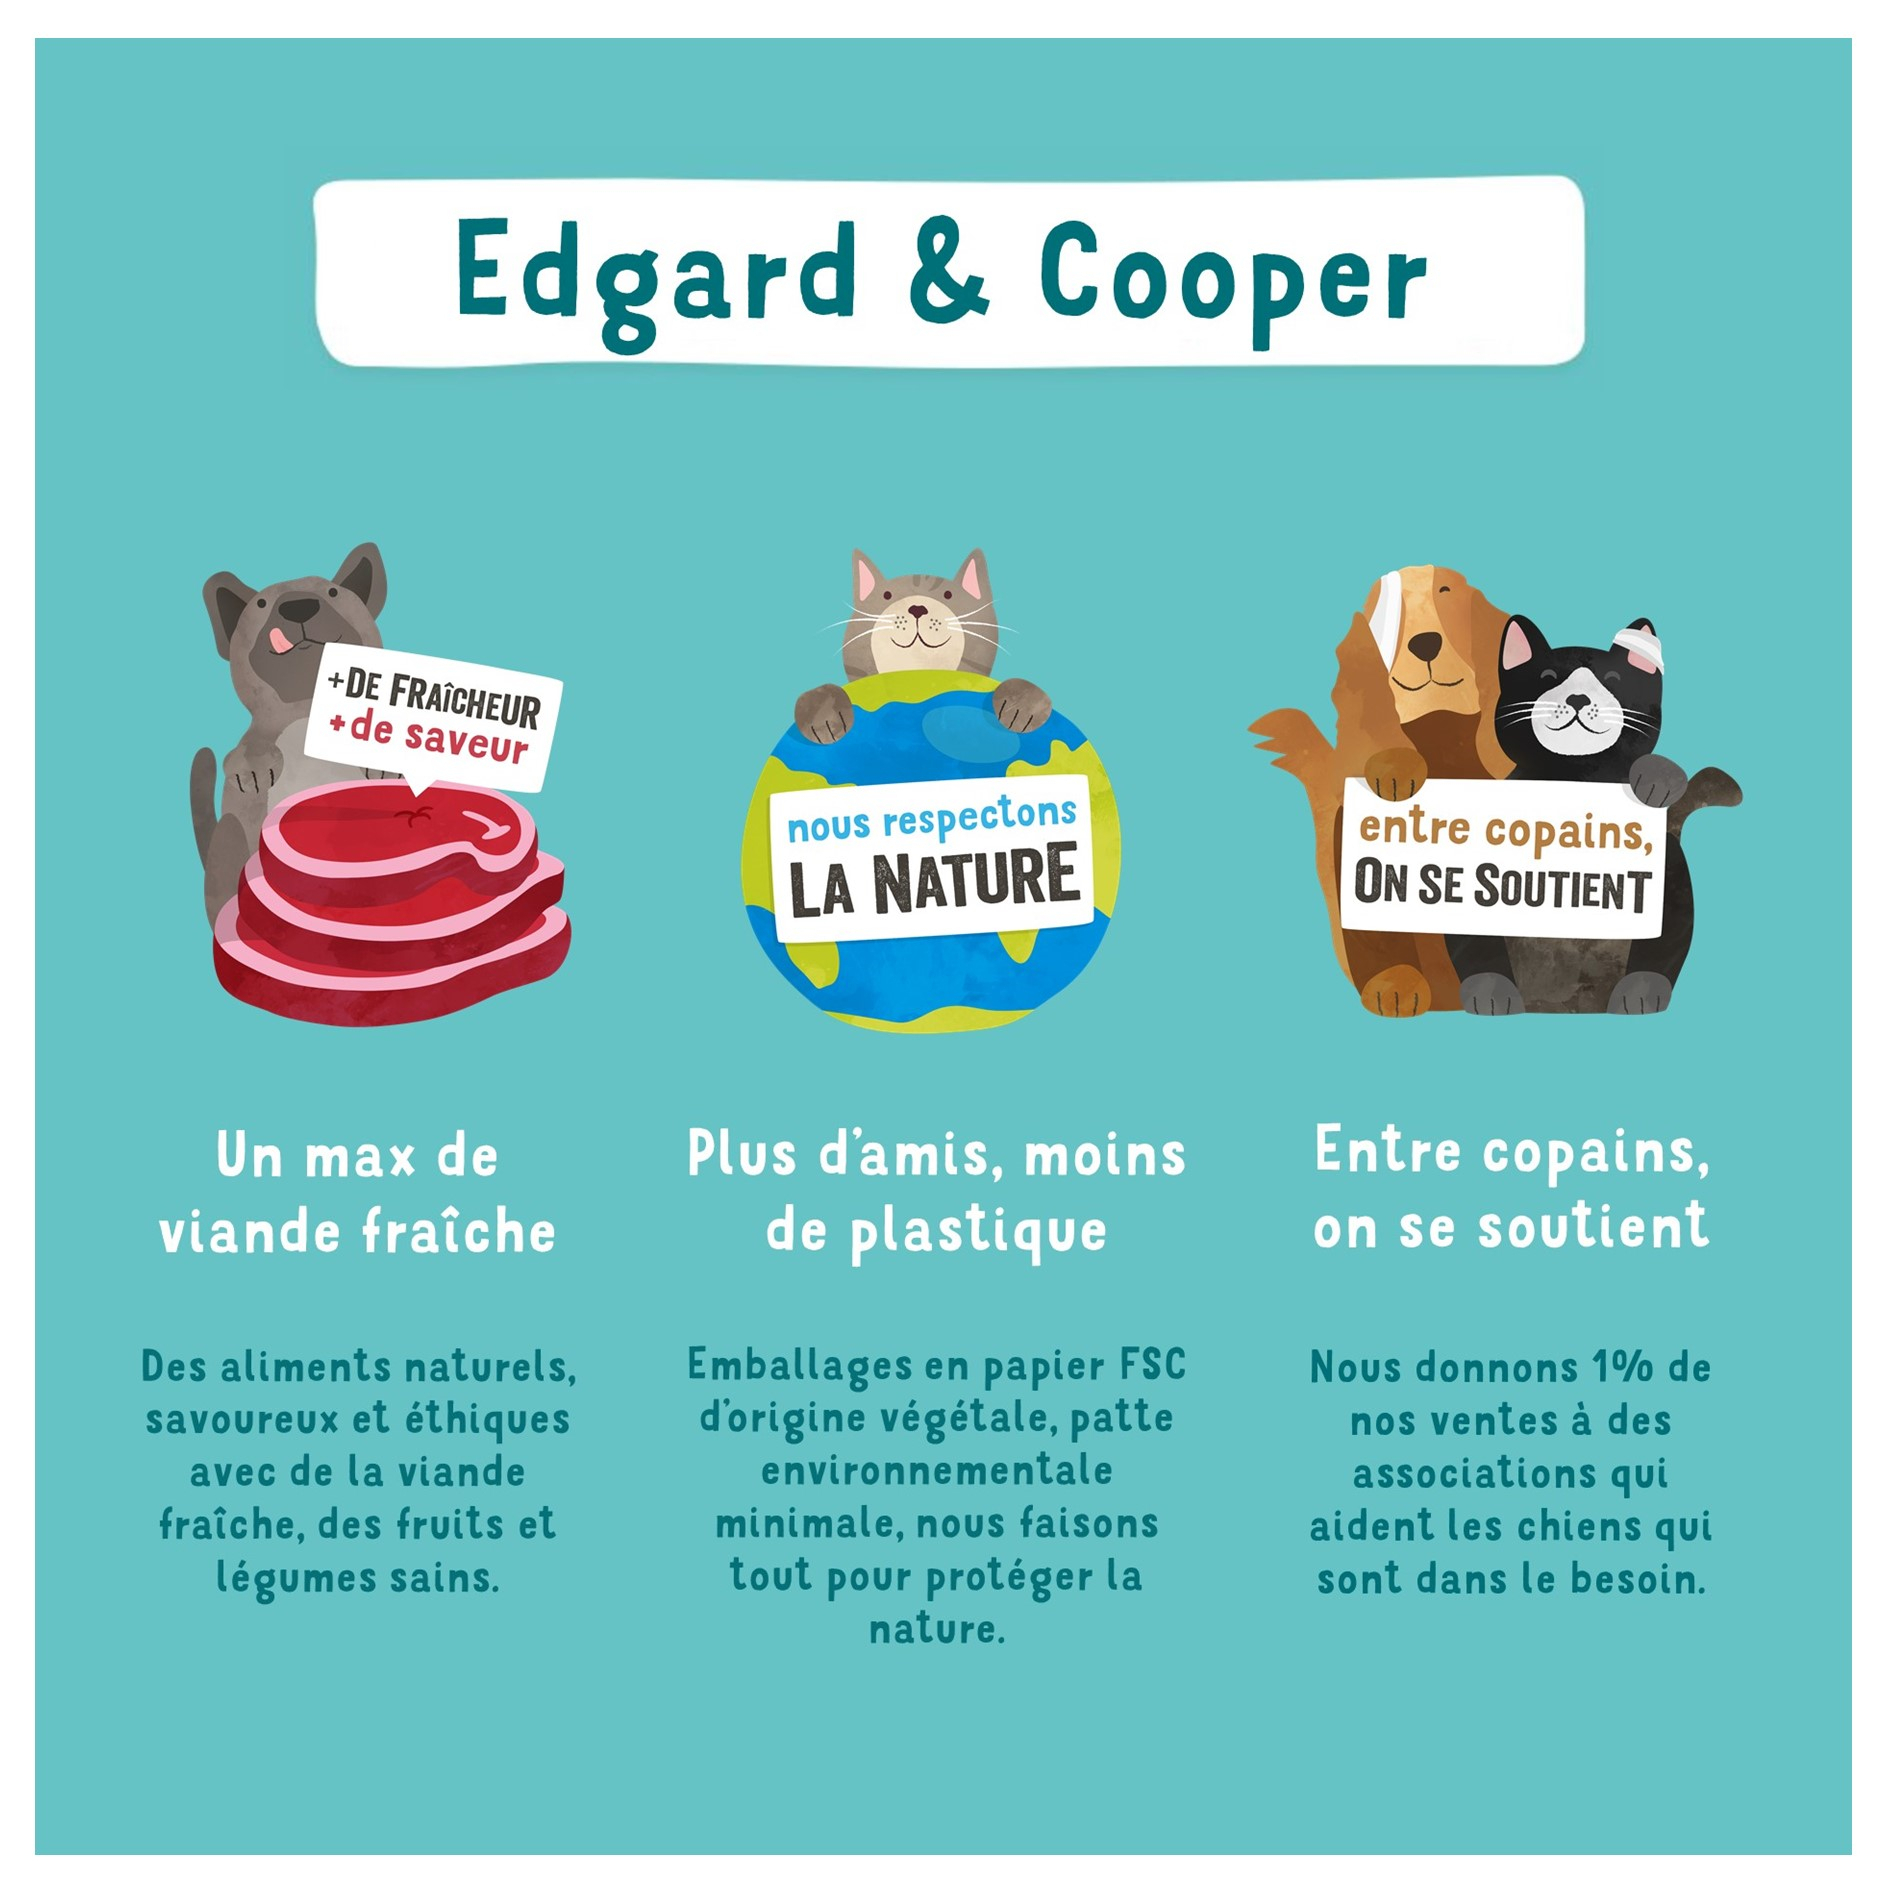 Edgard & Cooper Barquette de Pâtée Poulet et Dinde frais Sans Céréales pour Chat Senior